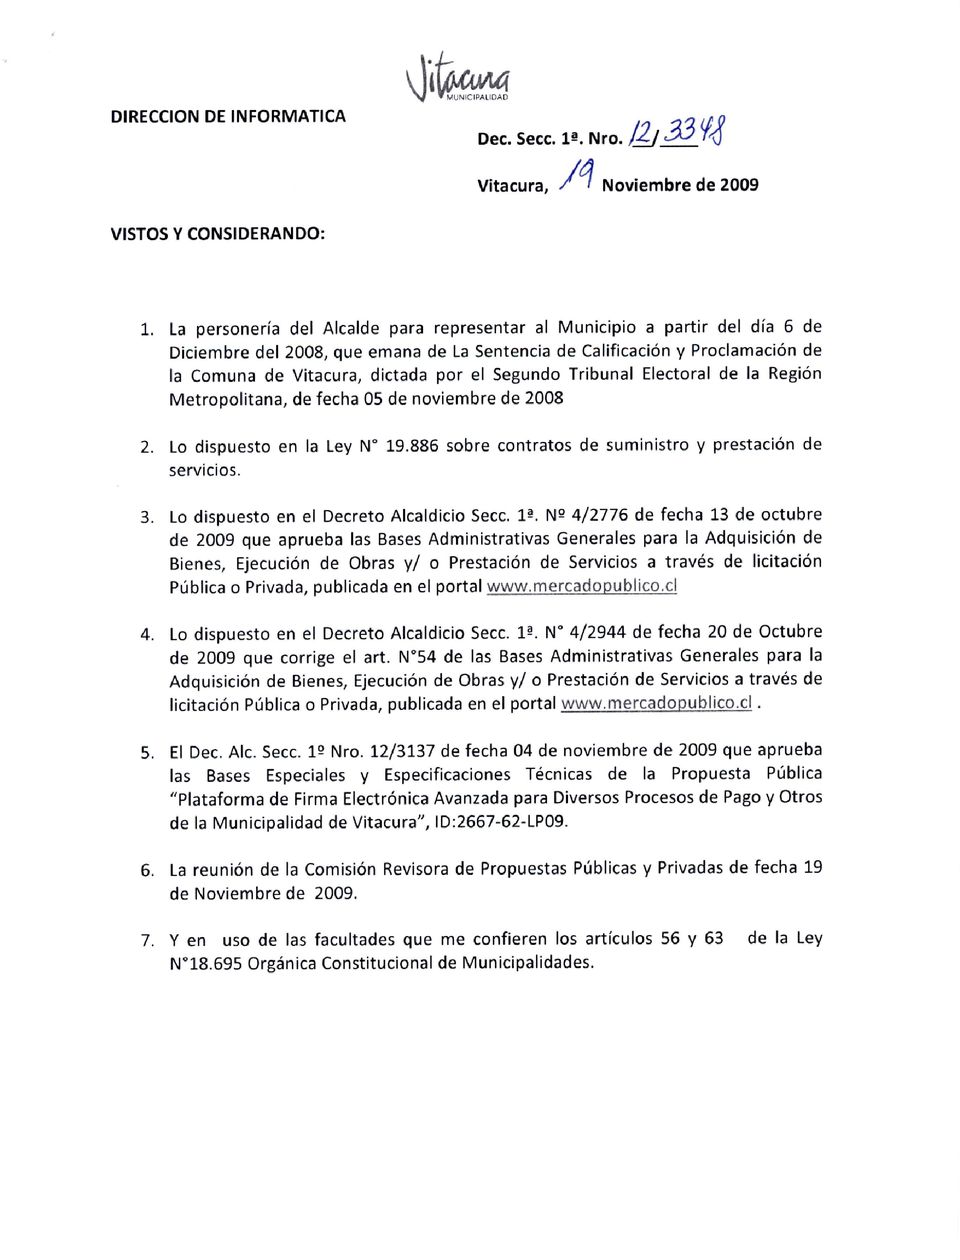 Calificación y Proclamación de la Comuna de Vitacura, dictada por el Segundo Tribunal Electoral de la Región Metropolitana, de fecha 05 de noviembre de 2008 Lo dispuesto en la Ley N 19.